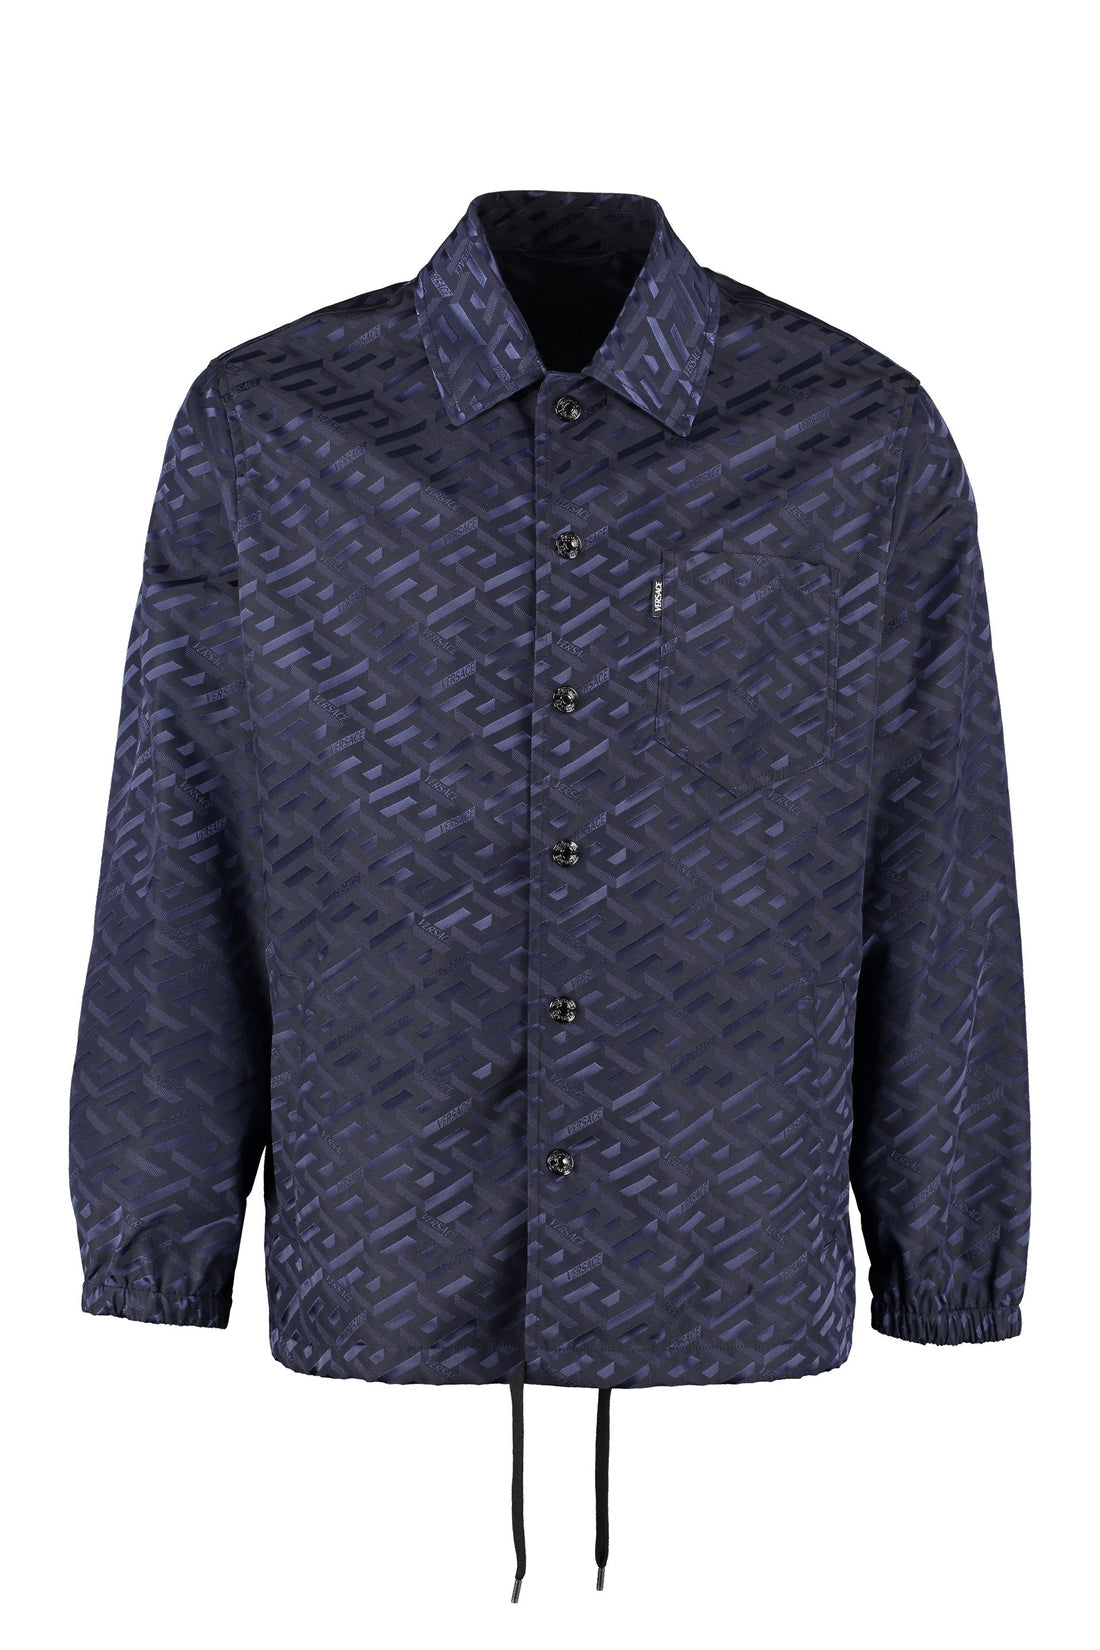 Versace-OUTLET-SALE-Technical fabric shirt-ARCHIVIST